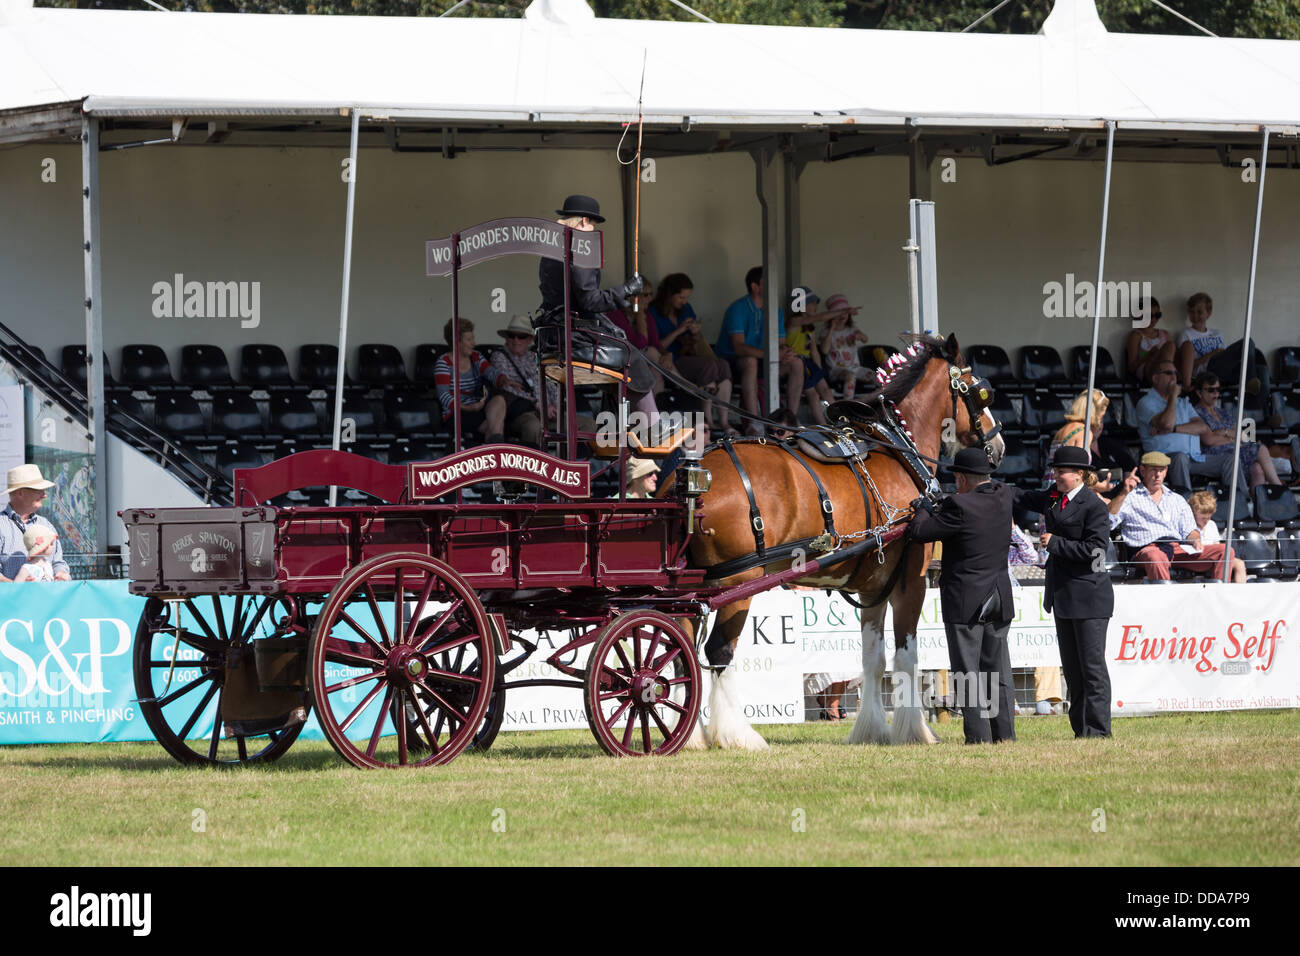 Una ale tradicional carro y Shire Horse son juzgados en un show de condado en Inglaterra Foto de stock